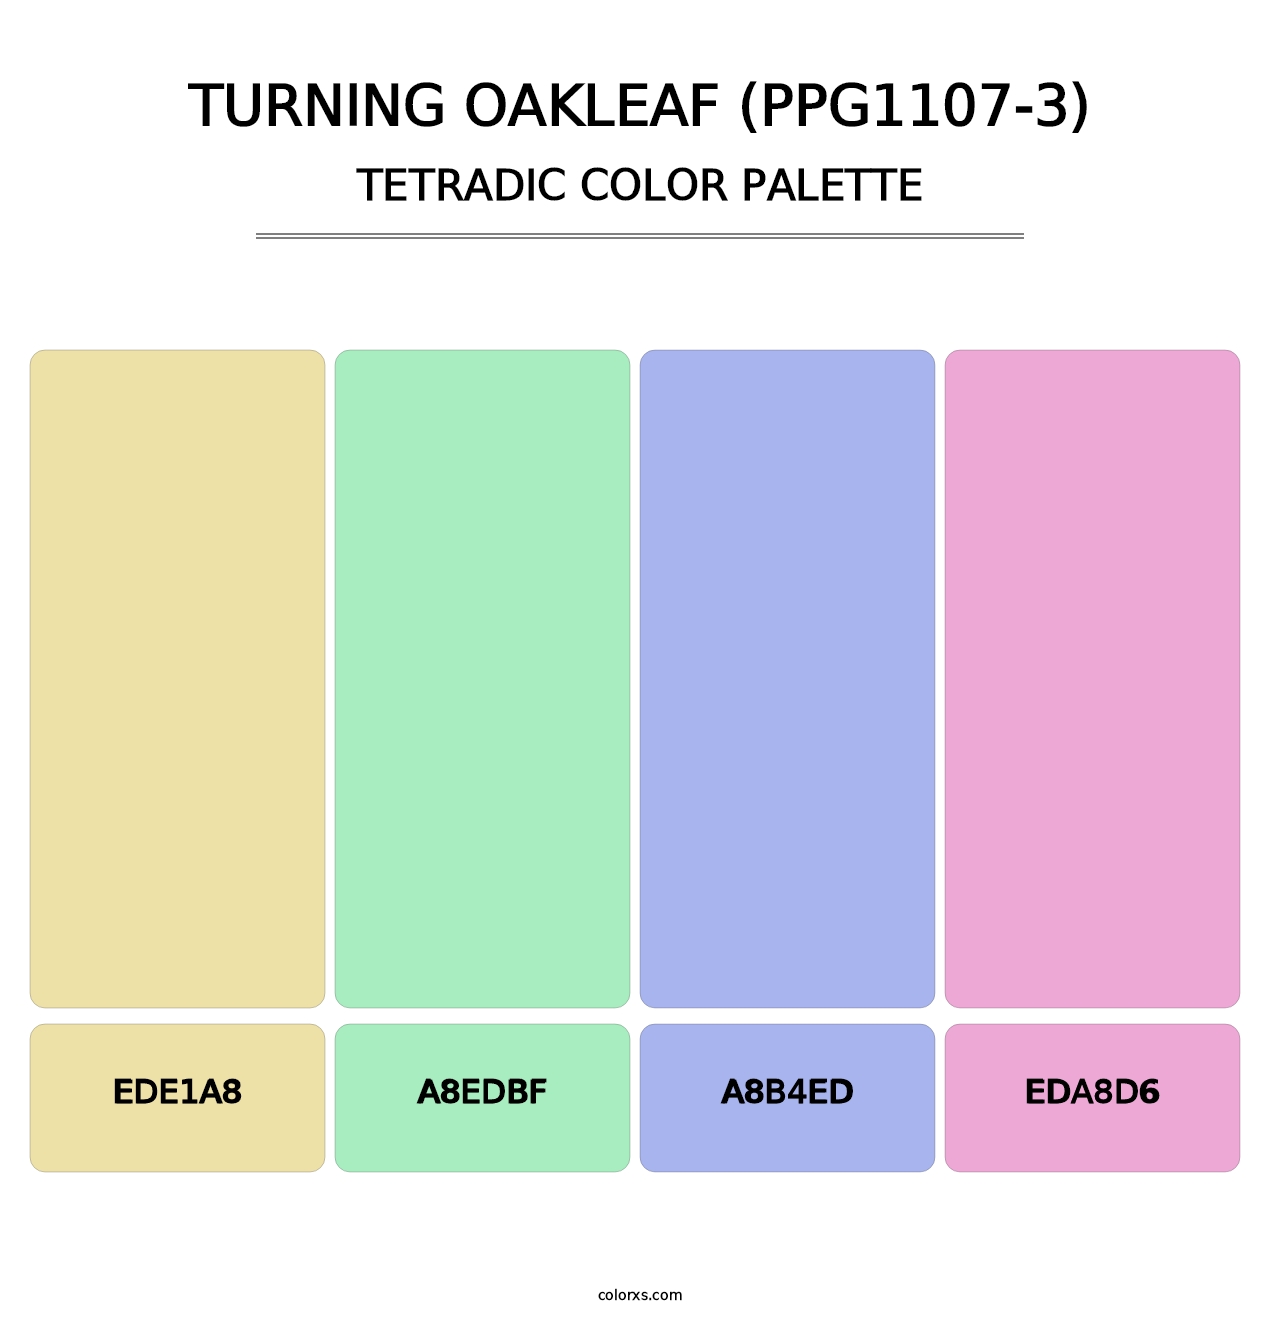 Turning Oakleaf (PPG1107-3) - Tetradic Color Palette